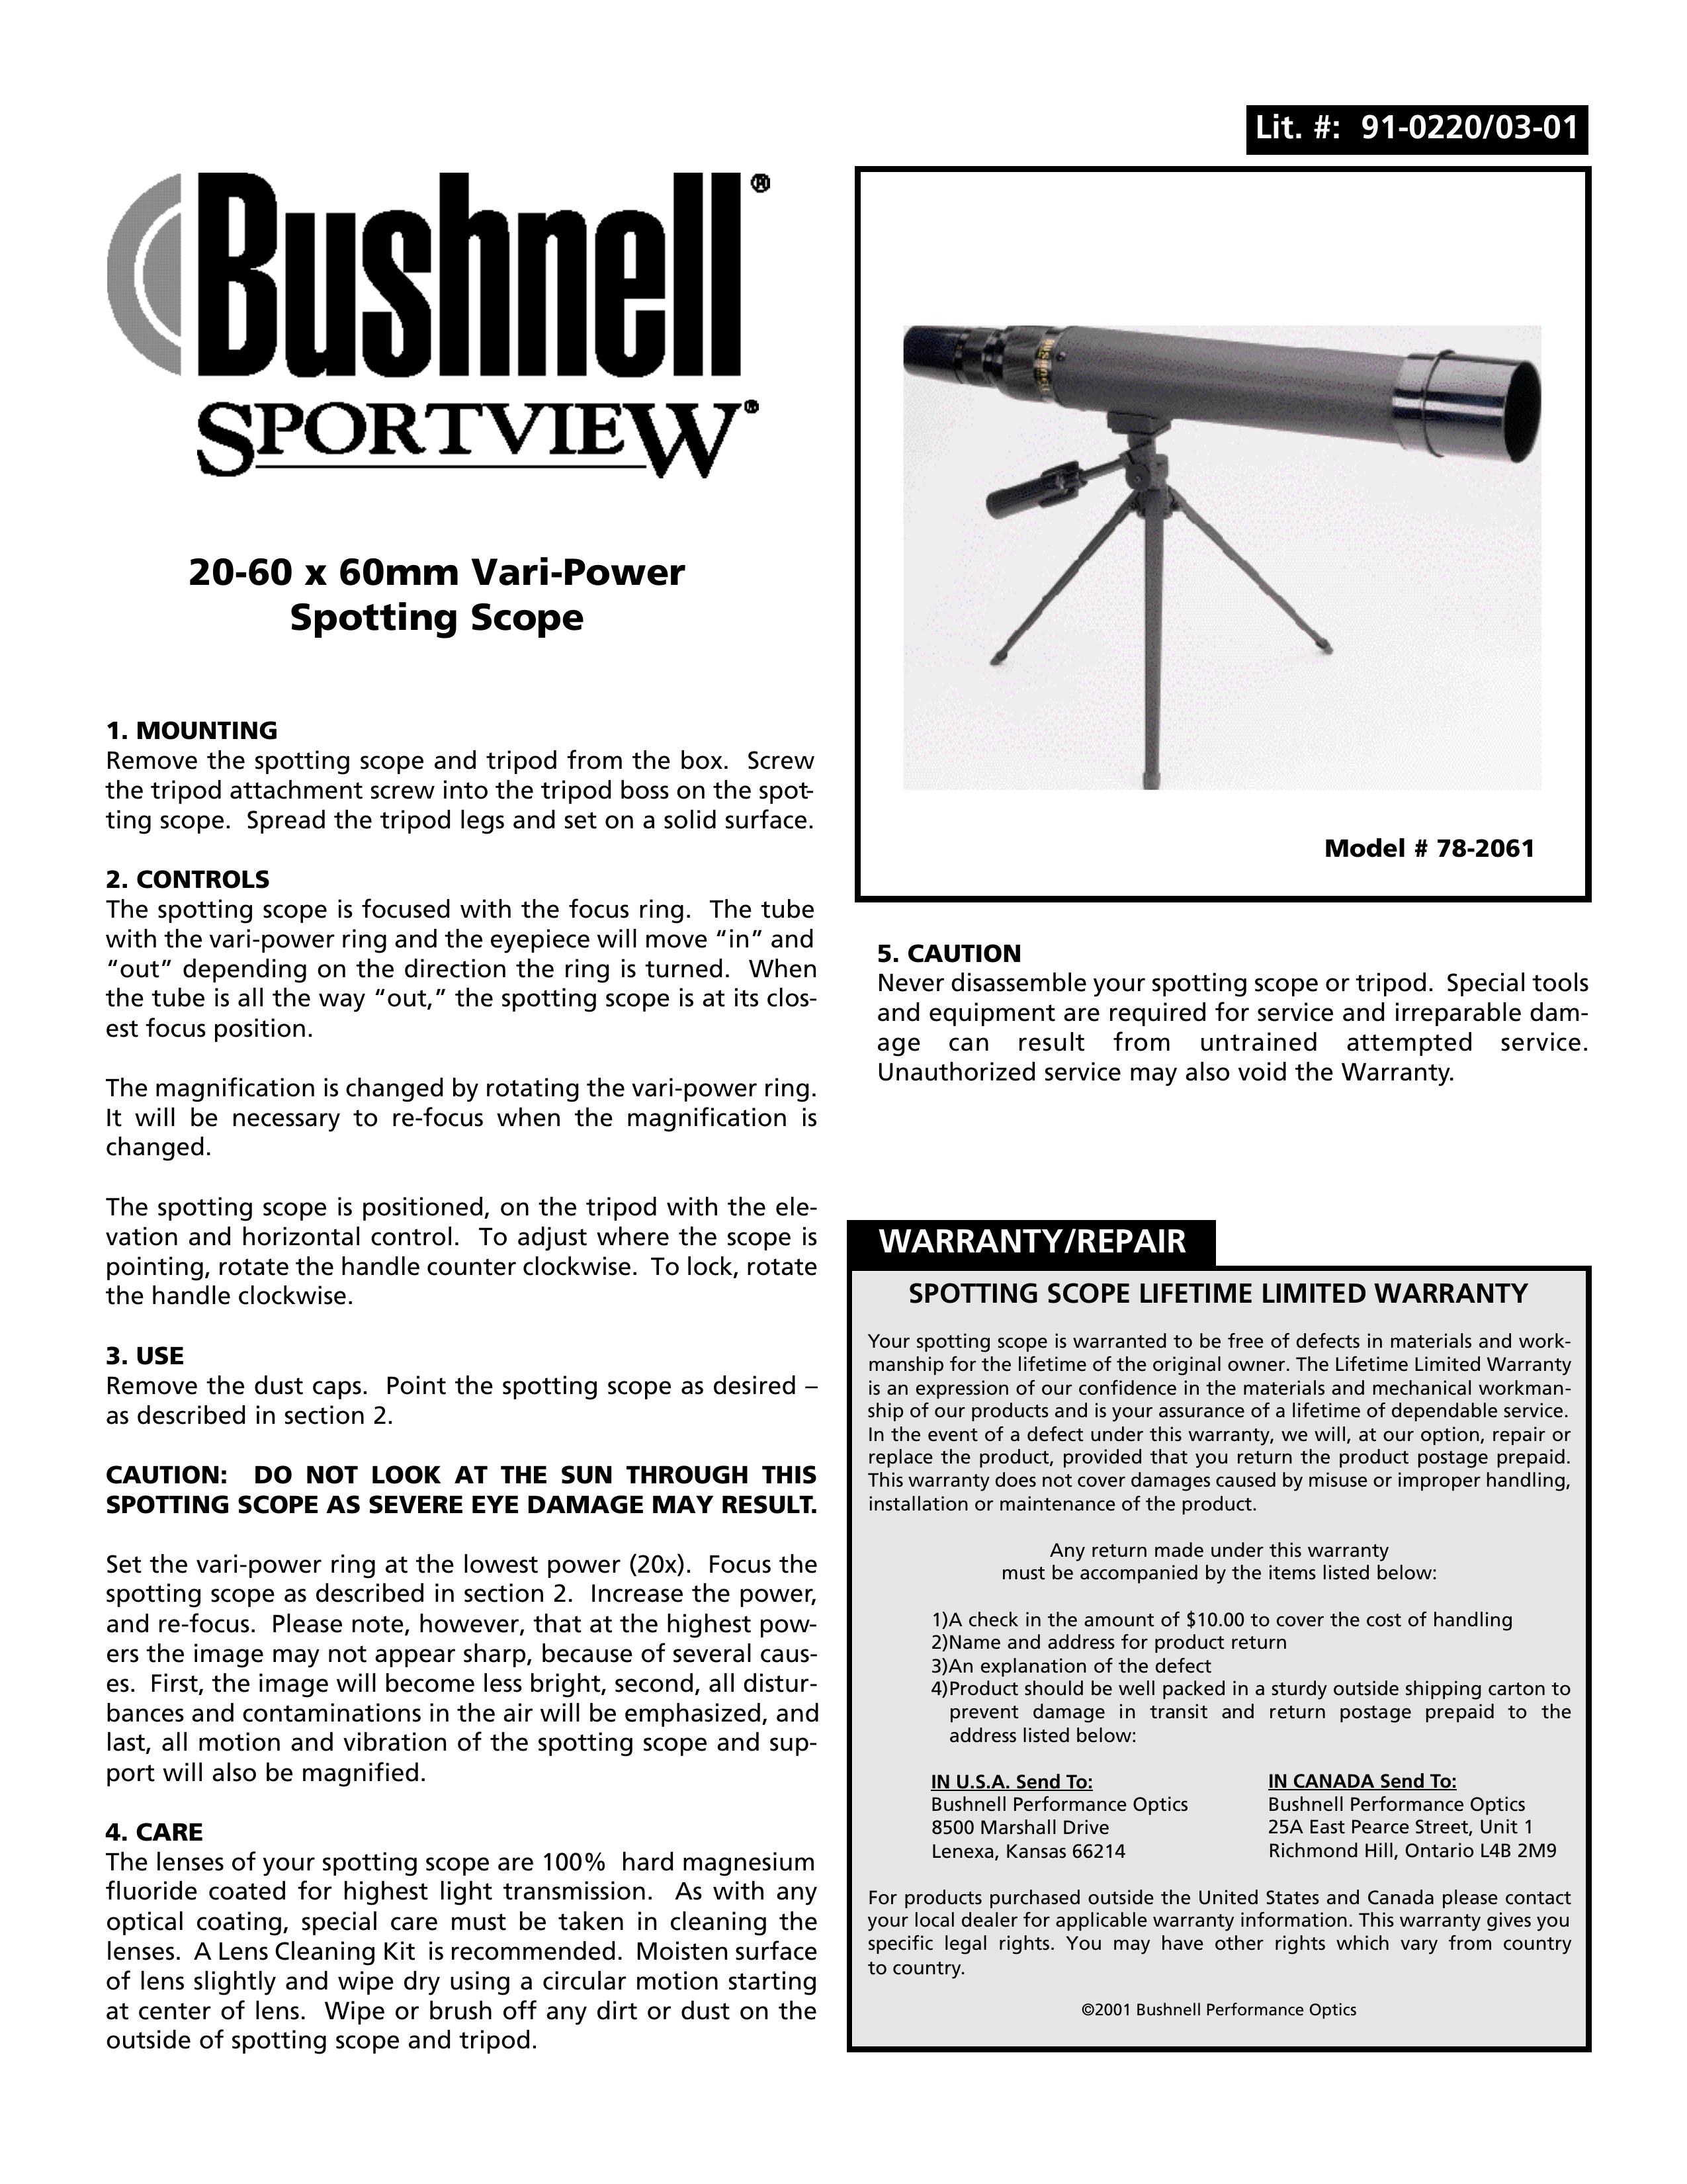 Bushnell 78-2061 Telescope User Manual